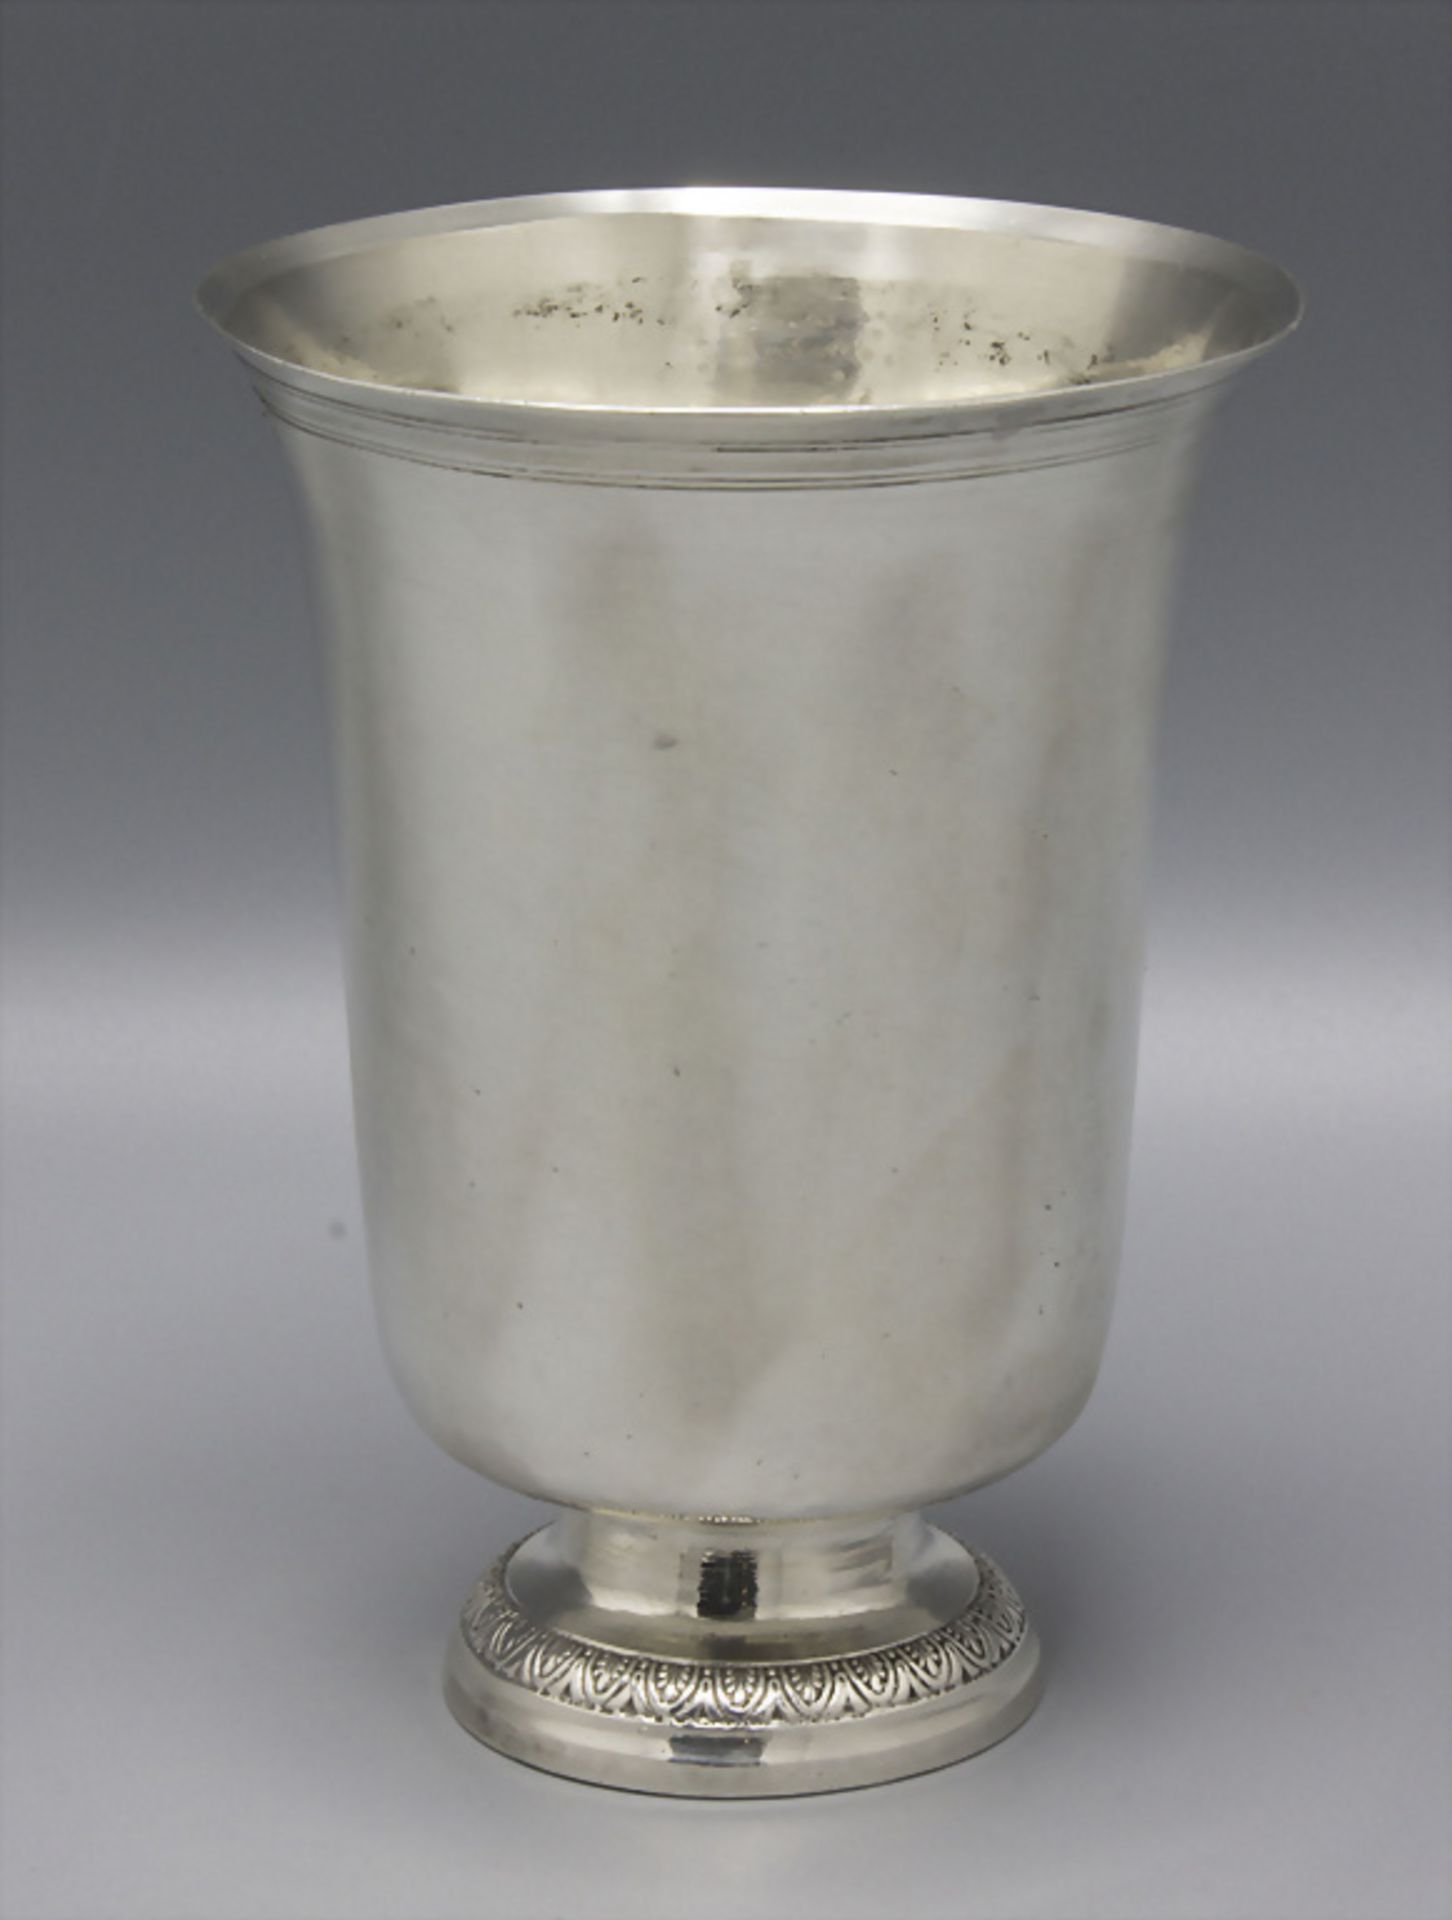 Glockenbecher / A bell shaped silver beaker, Beauvais, 1798-1809